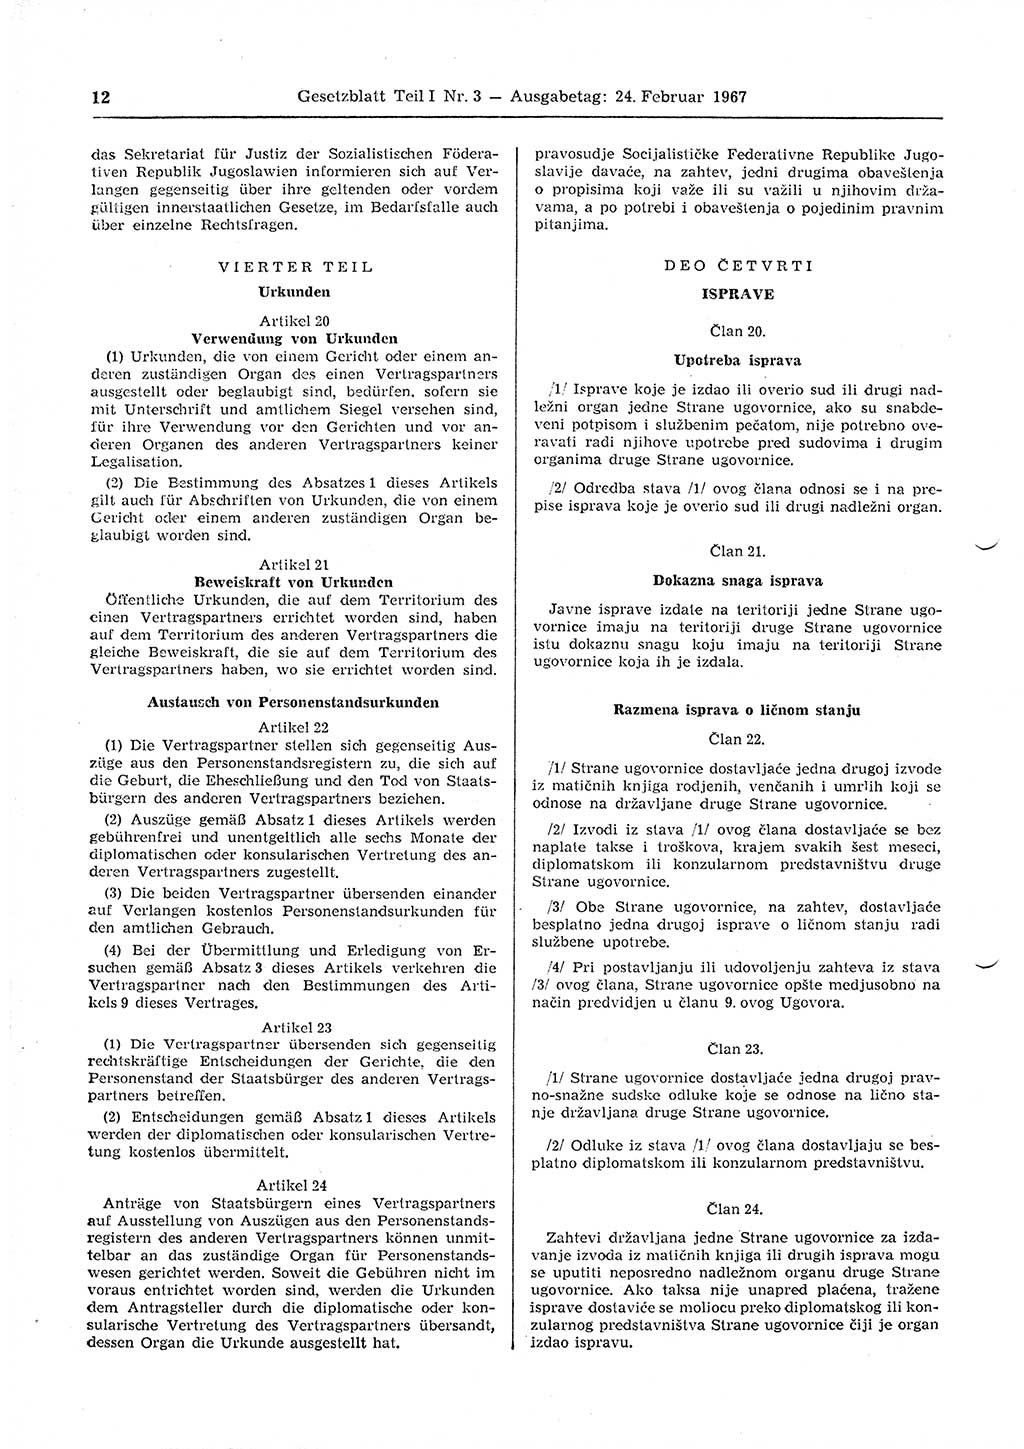 Gesetzblatt (GBl.) der Deutschen Demokratischen Republik (DDR) Teil Ⅰ 1967, Seite 12 (GBl. DDR Ⅰ 1967, S. 12)